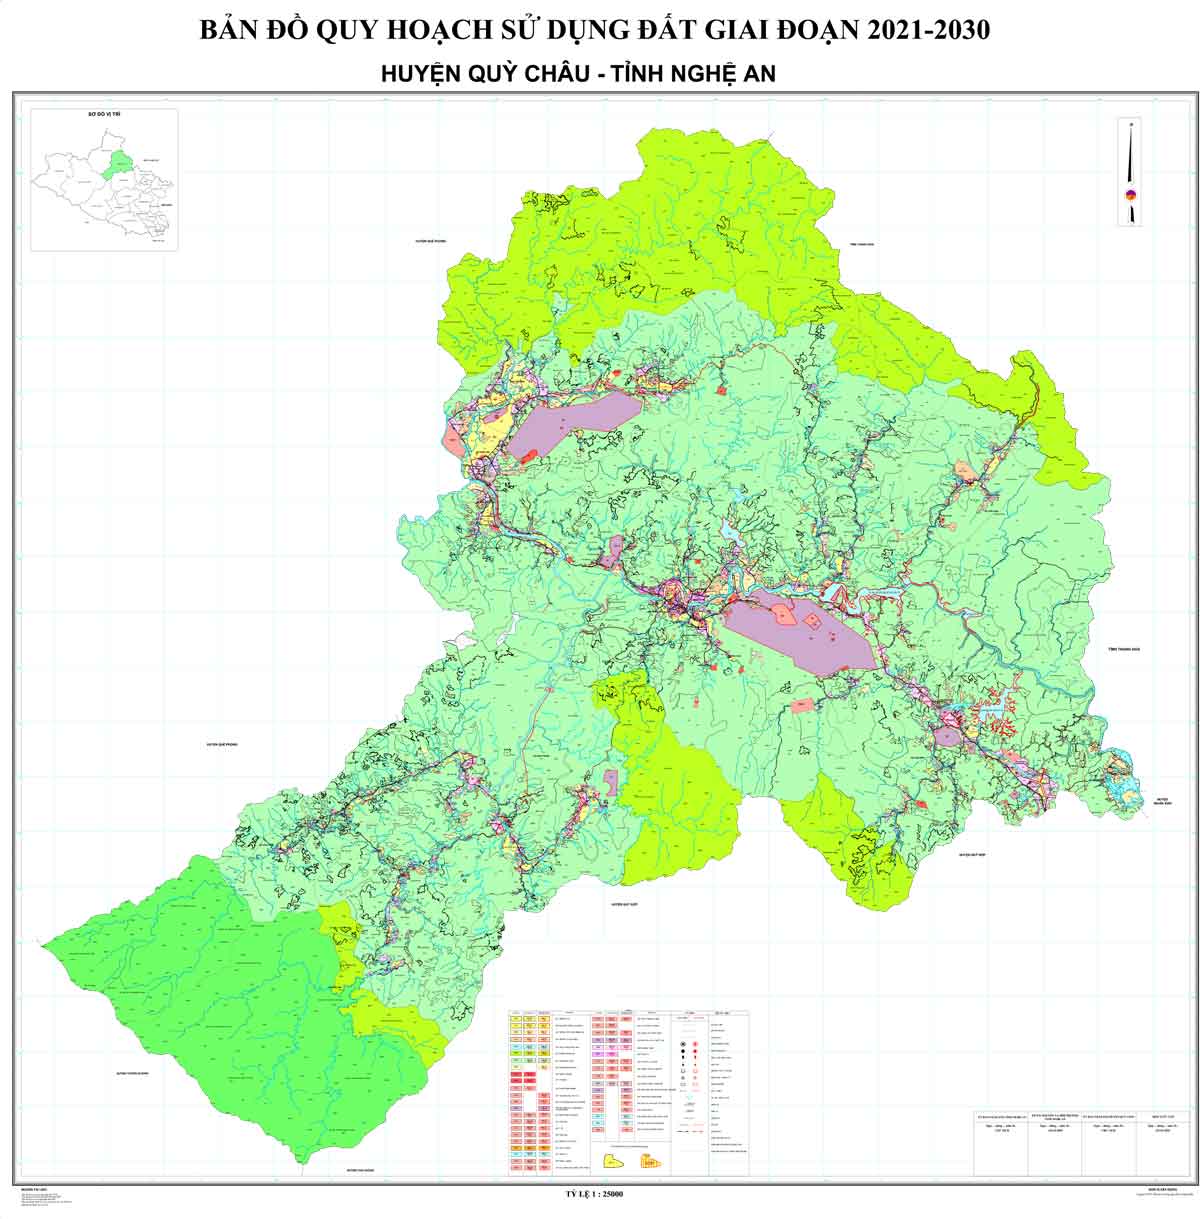 Bản đồ QHSDĐ huyện Quỳ Châu đến năm 2030